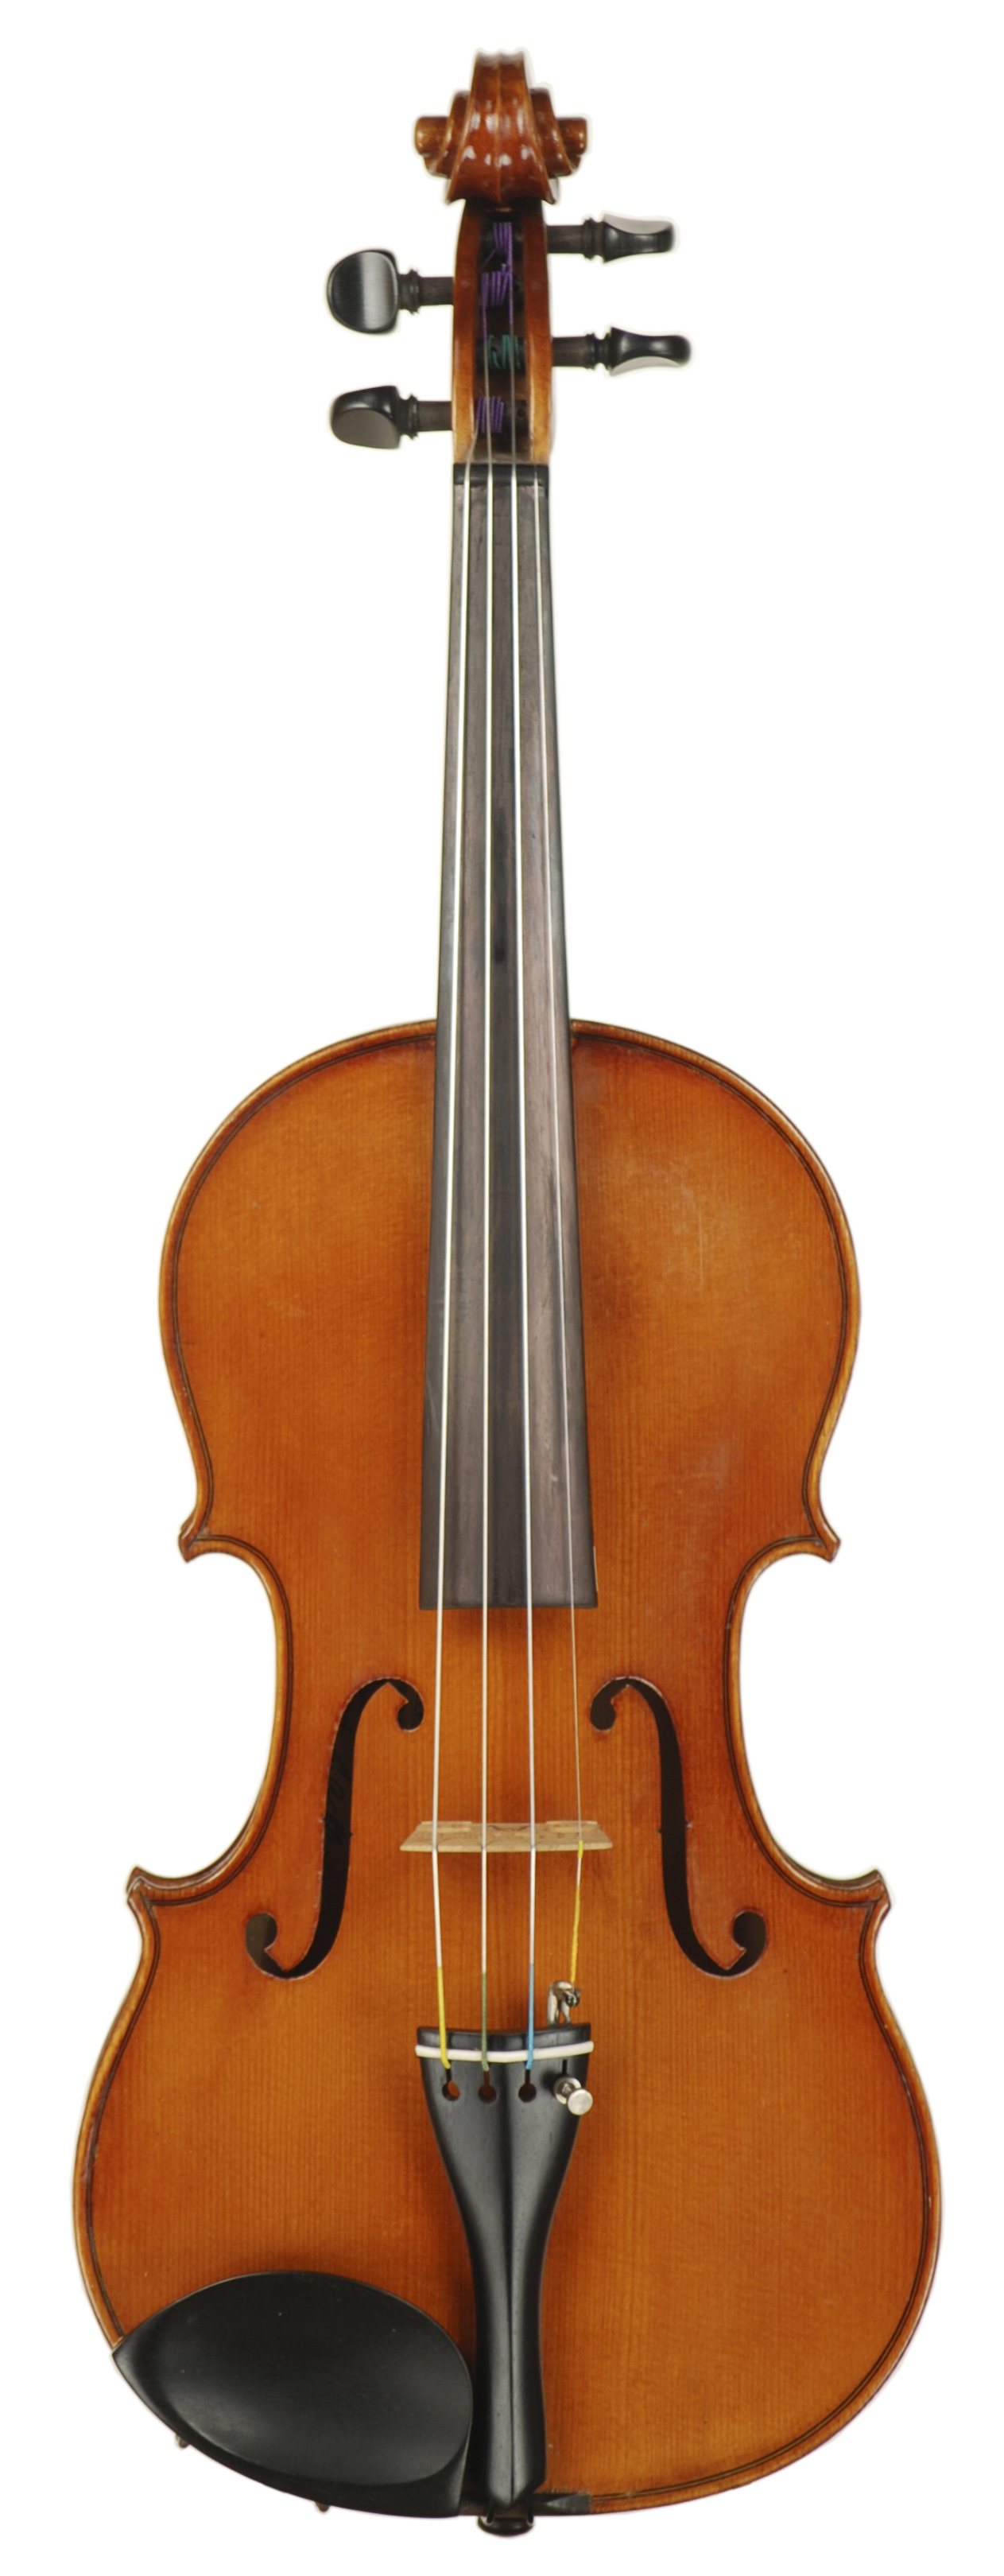 https://www.jrjuddviolins.com/wp-content/uploads/2022/01/Old-German-Violin-Stradivarius-Model-Circa-1960-SKU-49582-VN-Top.jpg